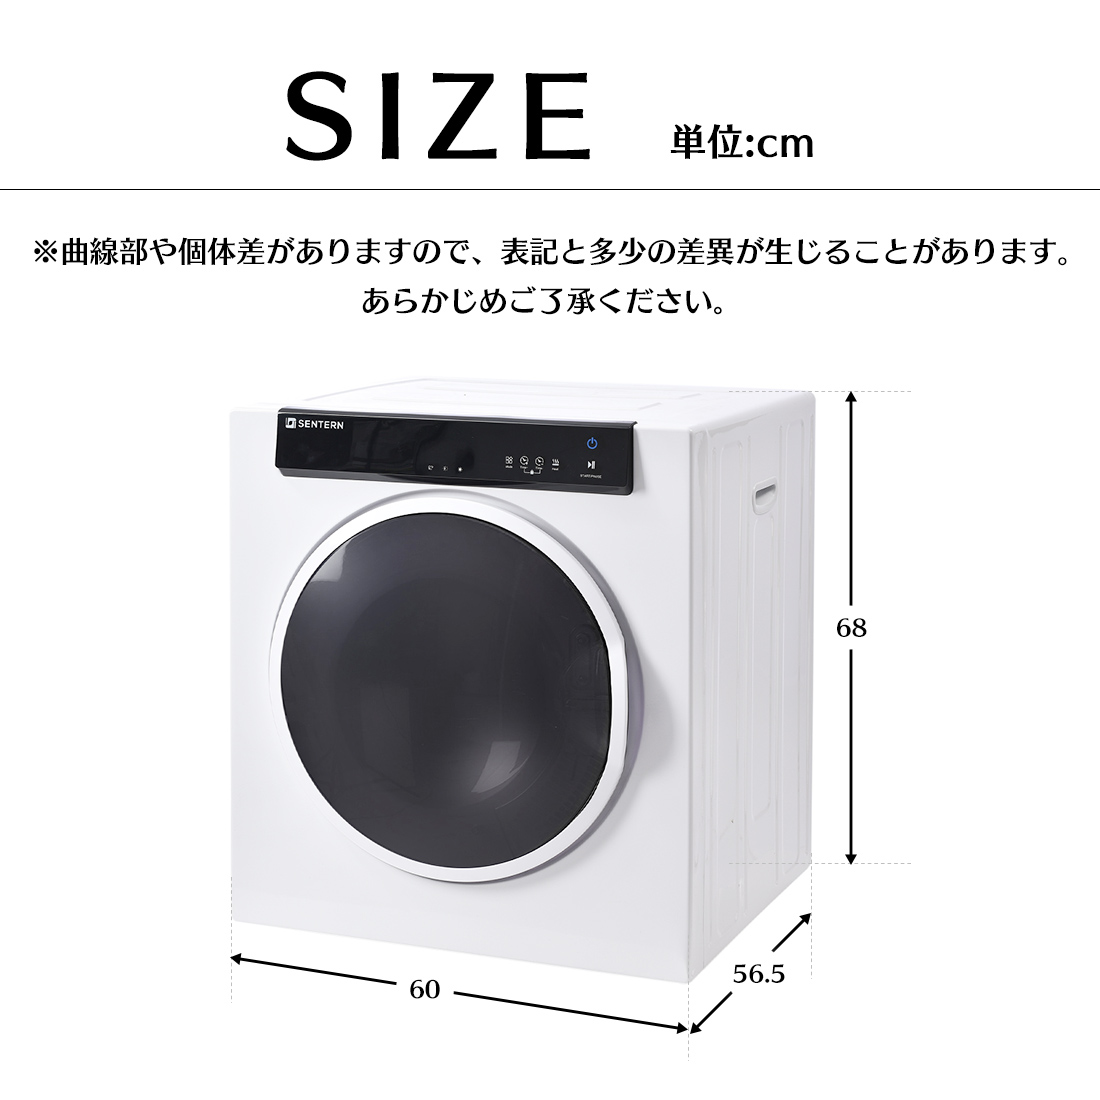 優先配送 着払い 全自動洗濯機 0711か2 J 220 洗濯機 